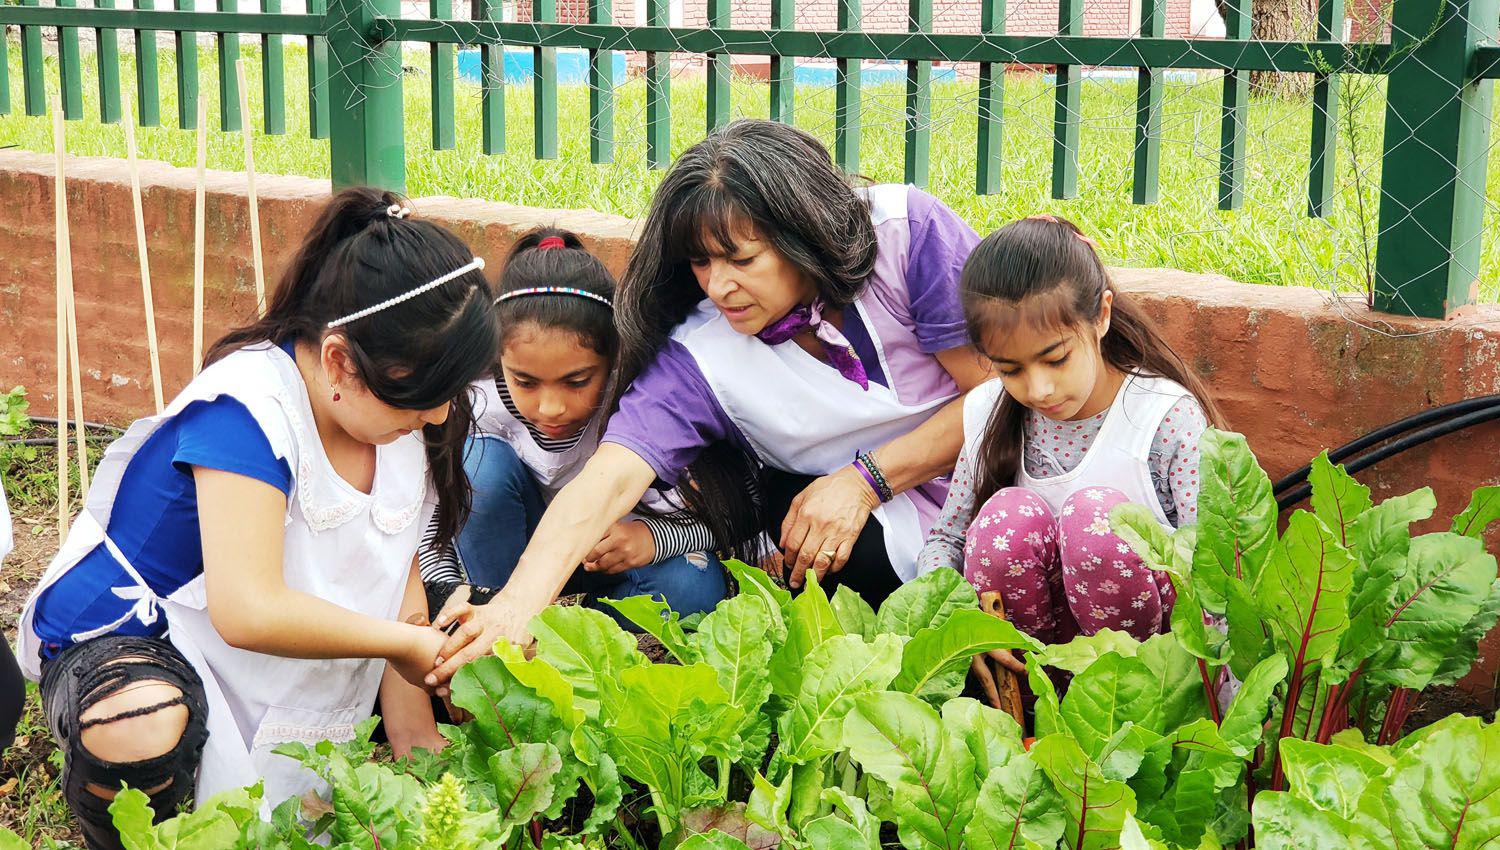 Santiago incorpora la Educacioacuten Ambiental en todas las escuelas locales